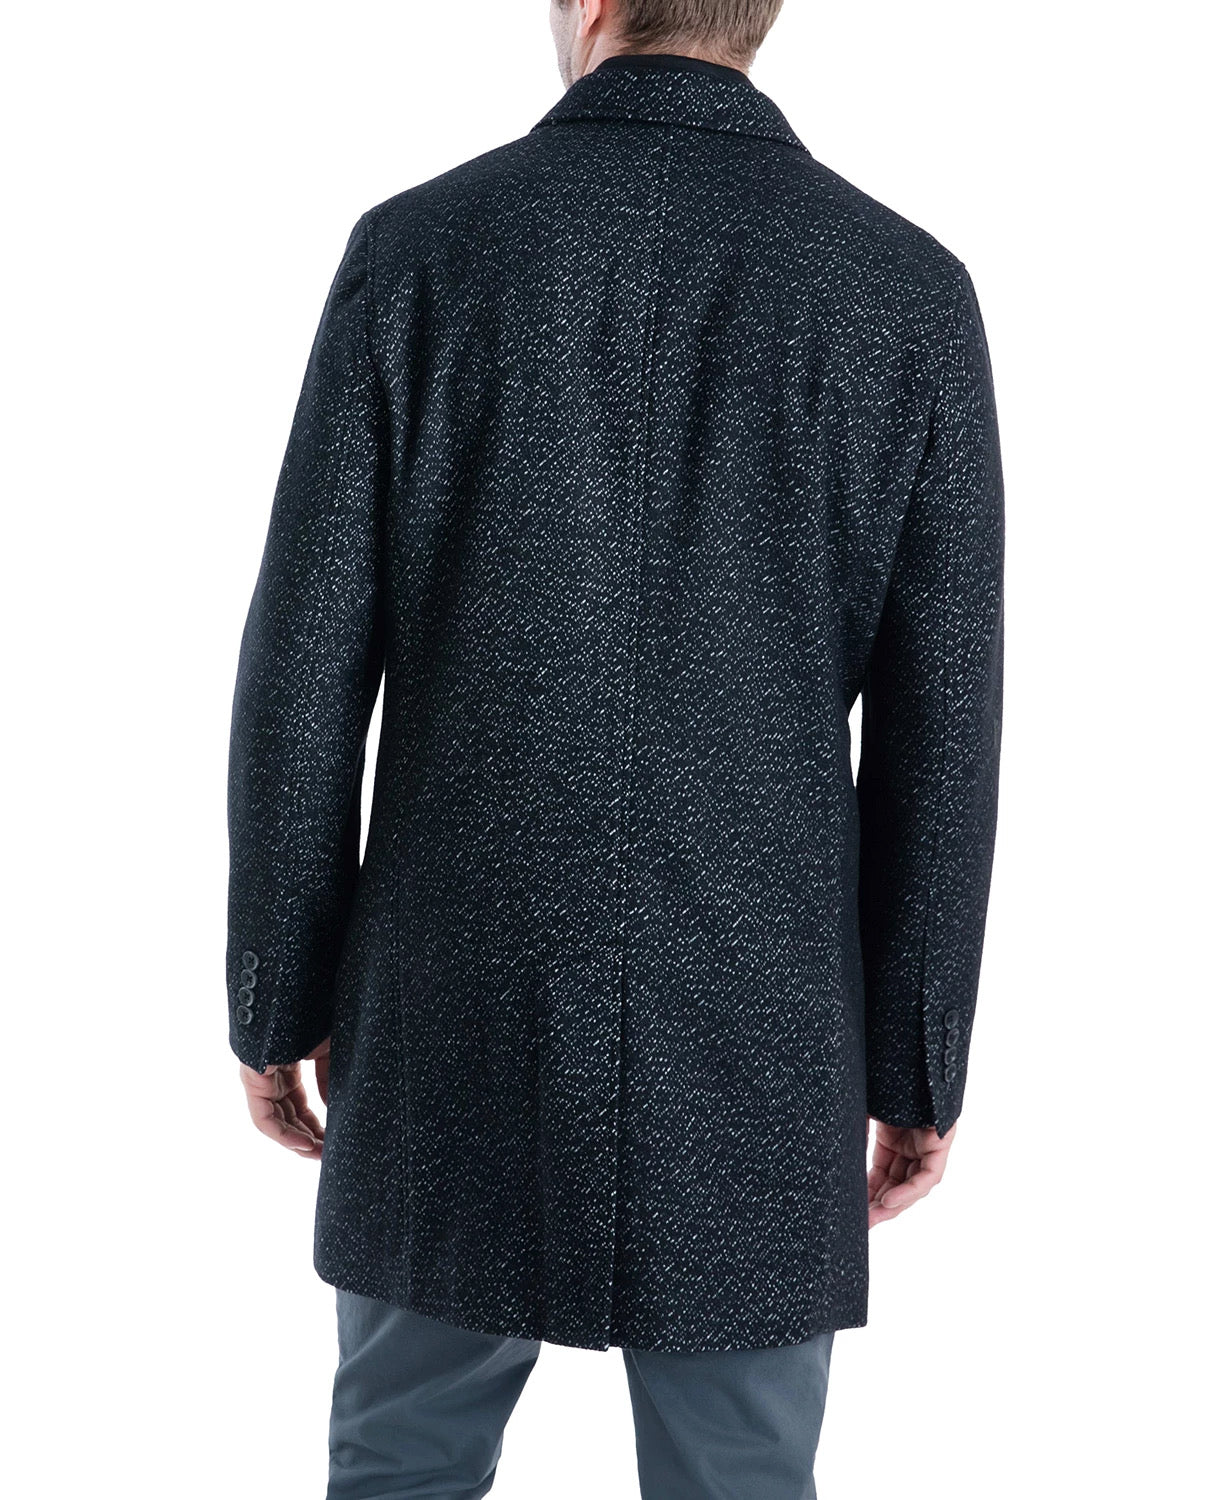 Michael Kors Men's Pike Slim Fit Top Coat 46L Black / White Overcoat